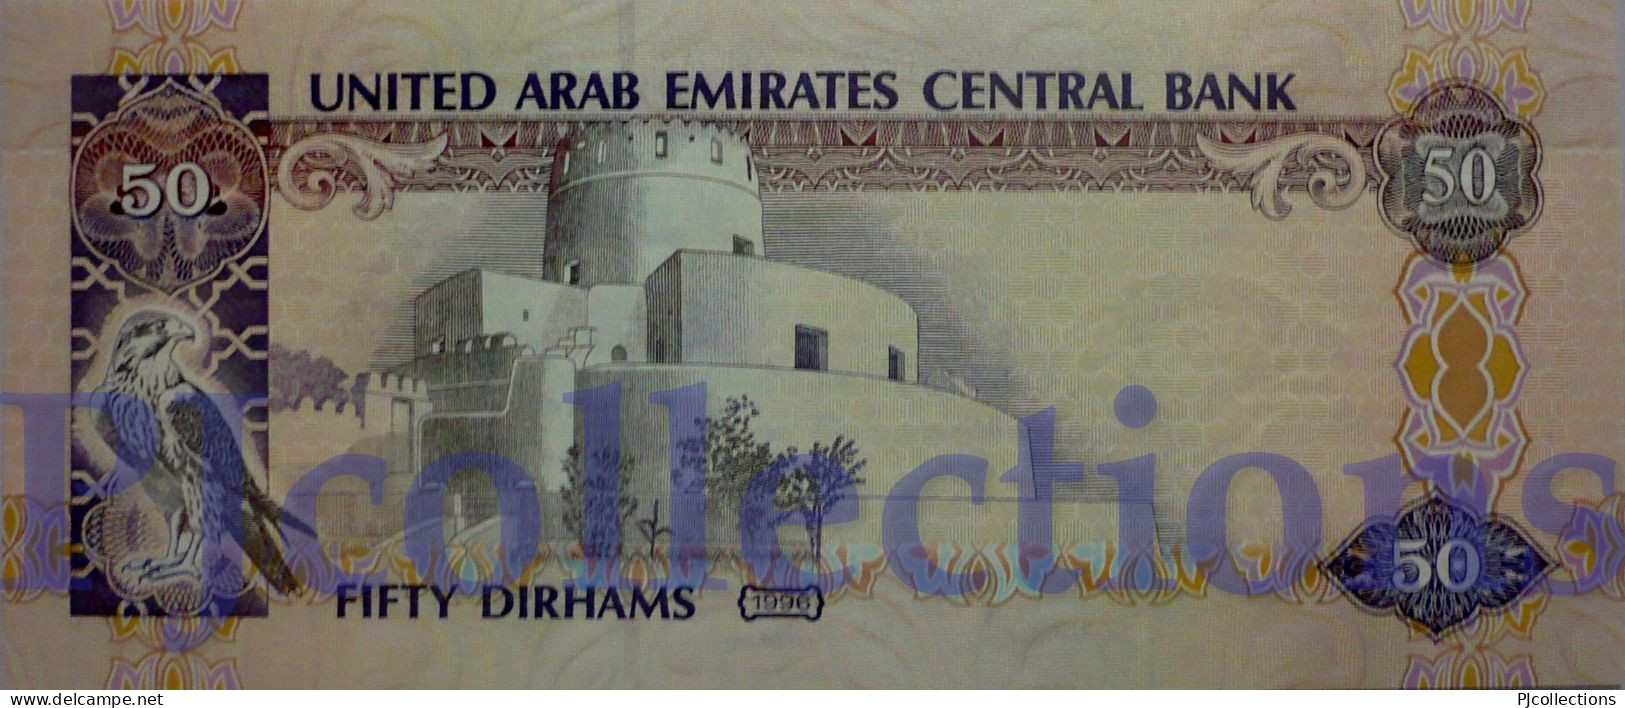 UNITED ARAB EMIRATES 50 DIRHAMS 1996 PICK 14b UNC - United Arab Emirates